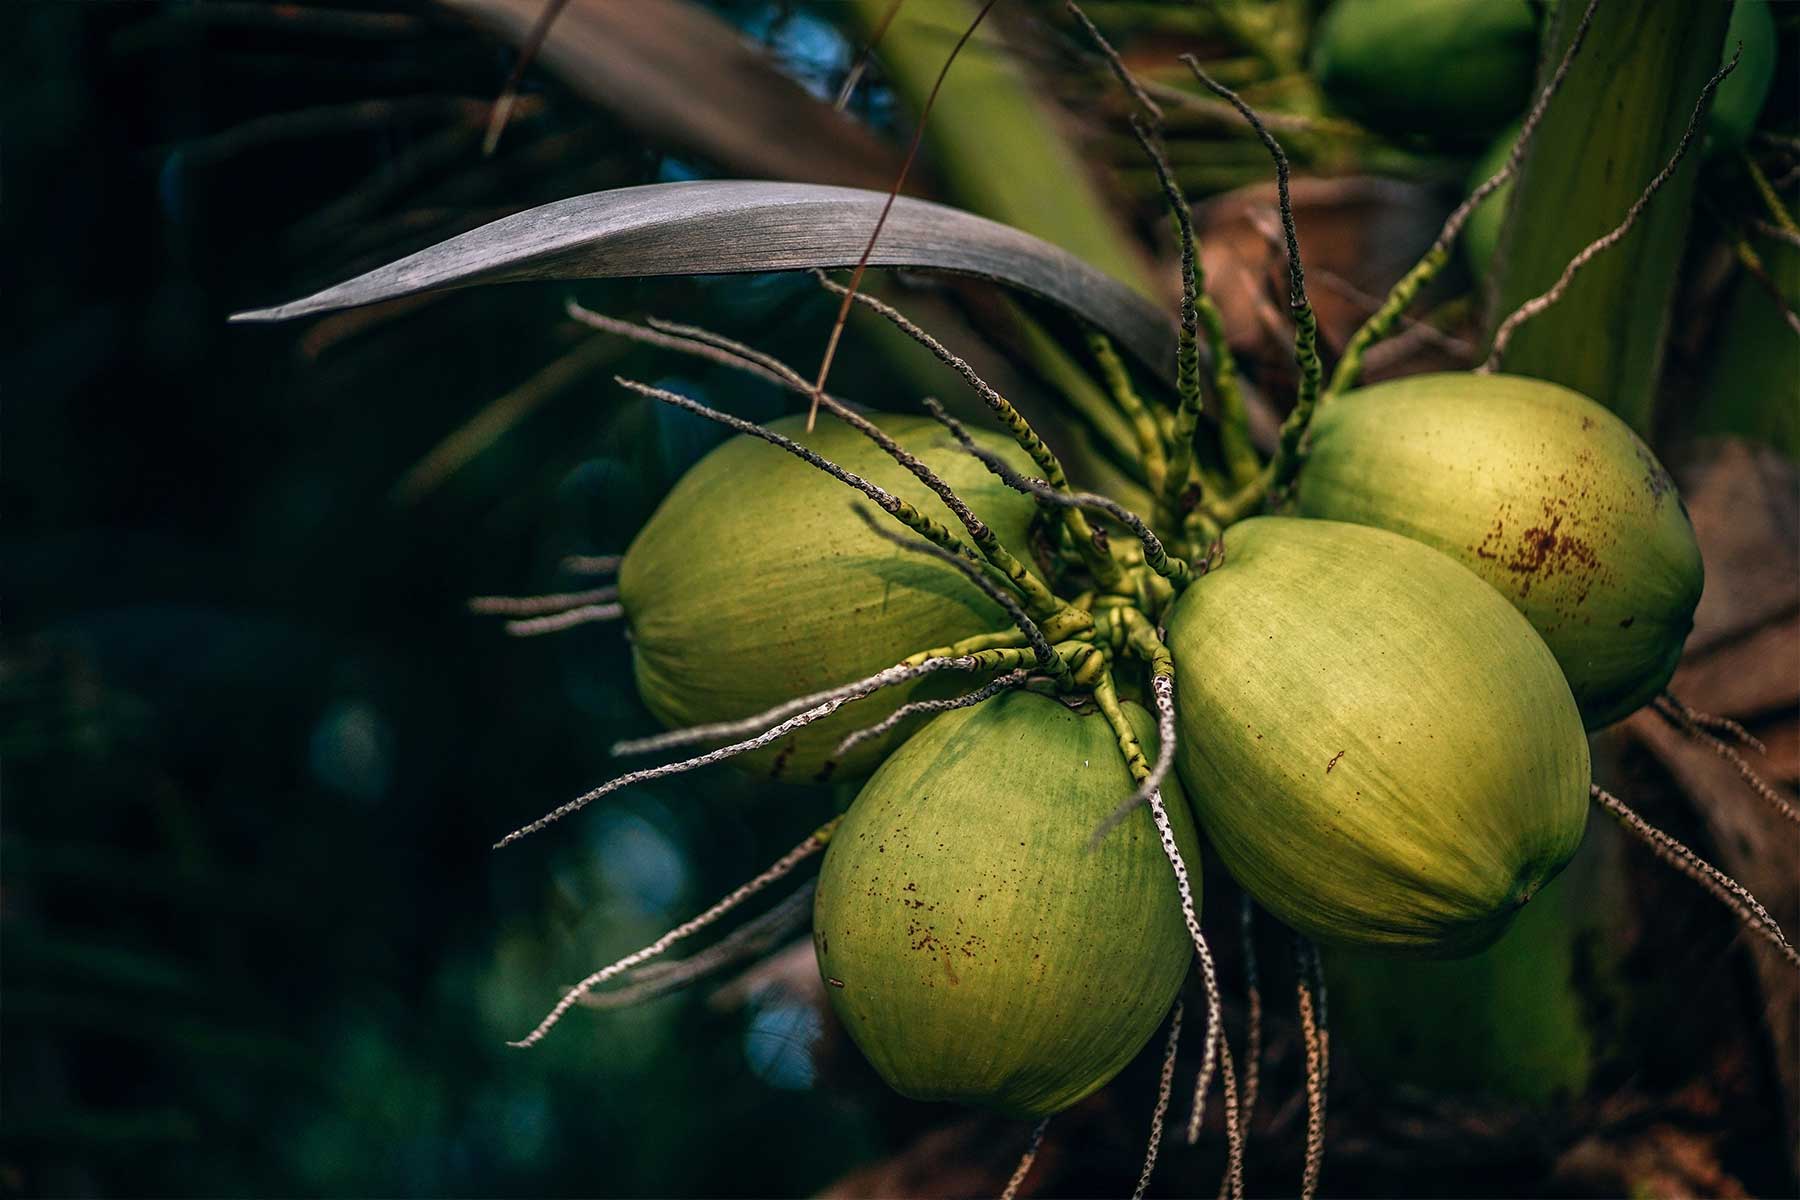 Kokospalmen tragen ganzjährig Früchte, denn die Kokosnüsse reifen ständig nach. Bis eine Palme das erste Mal trägt, dauert es allerdings rund zwölf Jahre. Abhängig von Sorte, Standort und Pflege liefert eine Palme bis zu 150 Kokosnüsse pro Jahr. (Bild: © Nipanan Lifestyle/iStock.com)